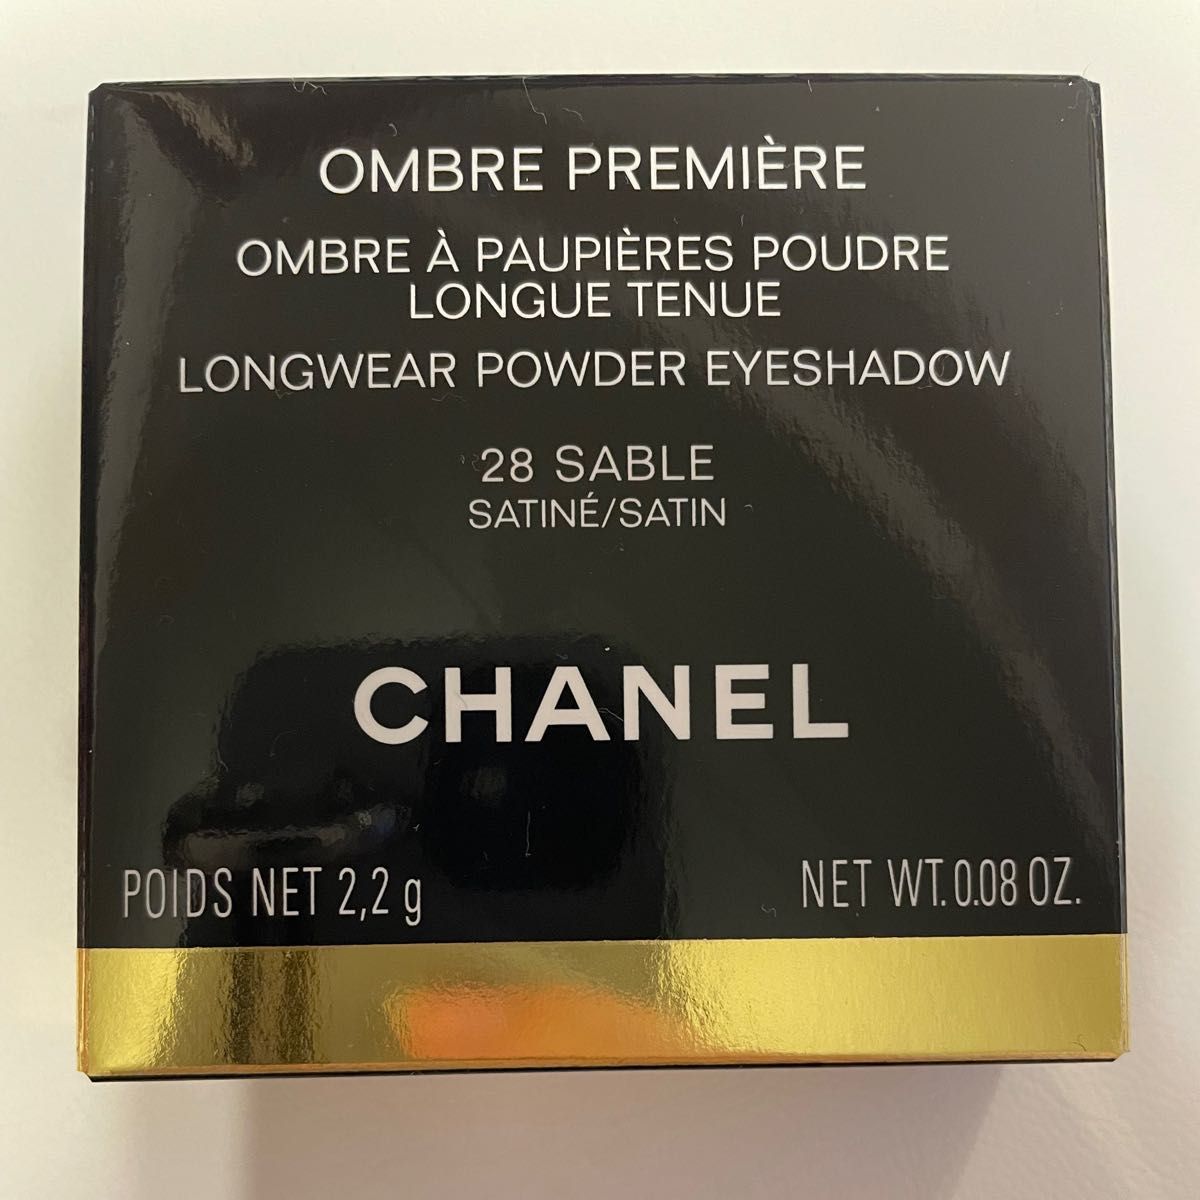 chanel ombre premiere longwear powder eyeshadow